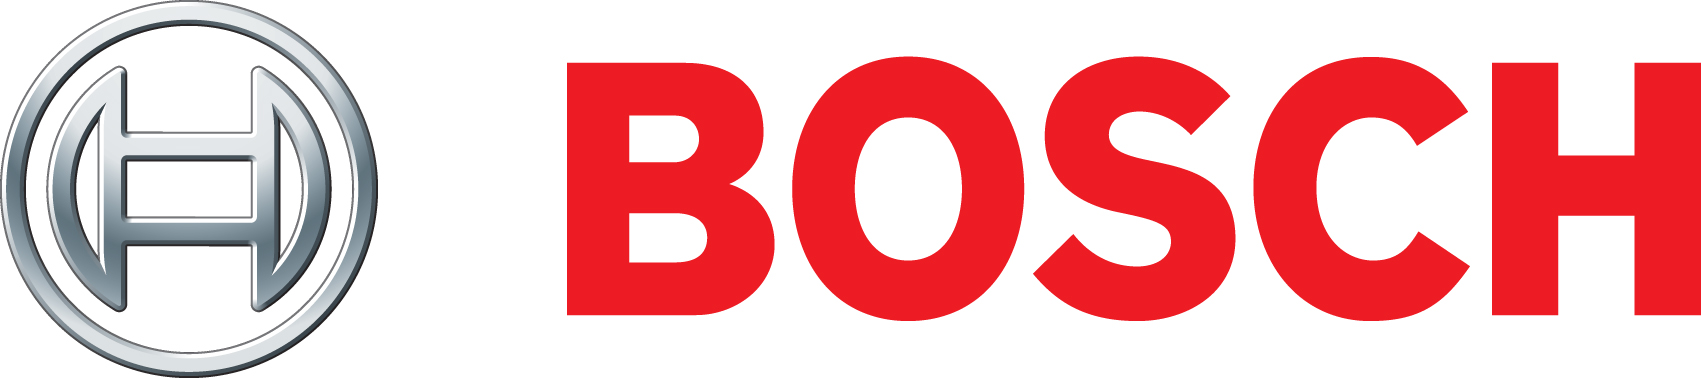 Bosch Logos